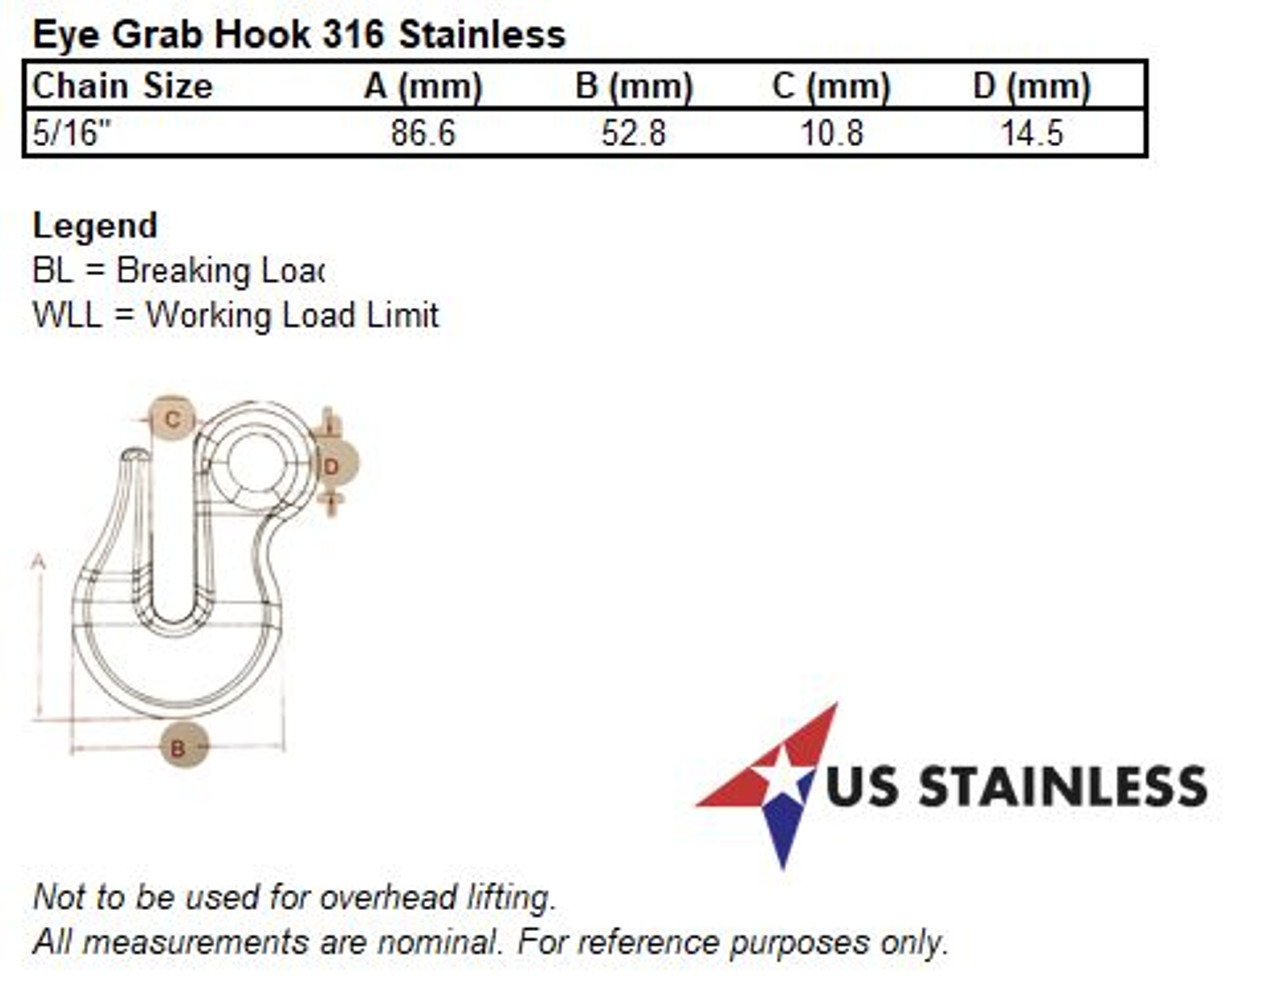 Stainless Steel 316 Eye Grab Hook 5/16 x 3 1/4 Marine Grade - US